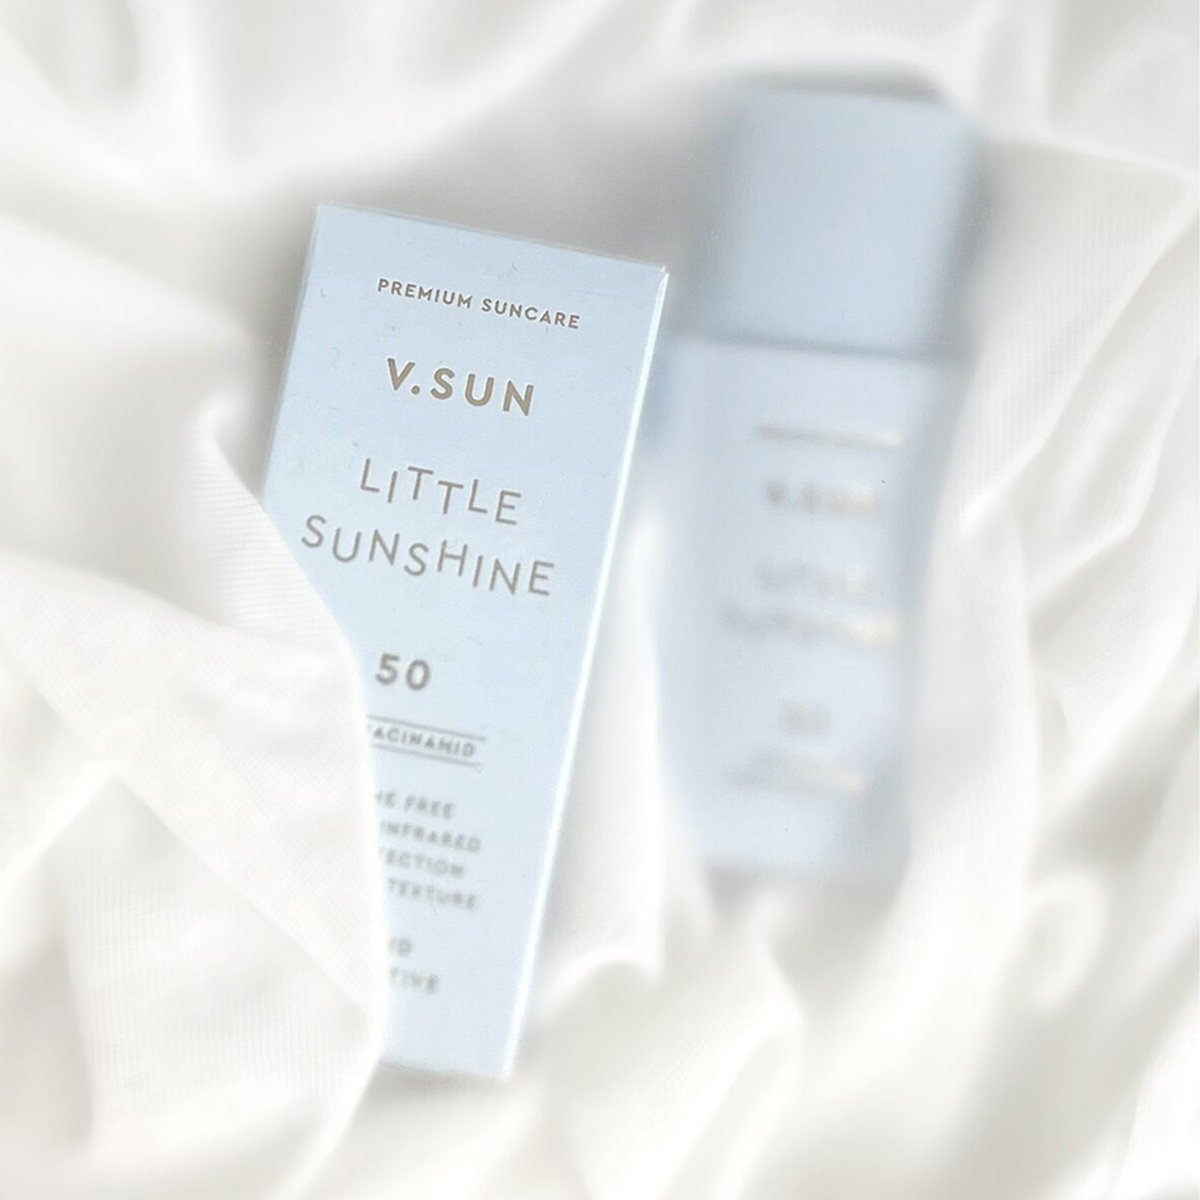 V.SUN - Fluid Face SPF 50 Perfume Free